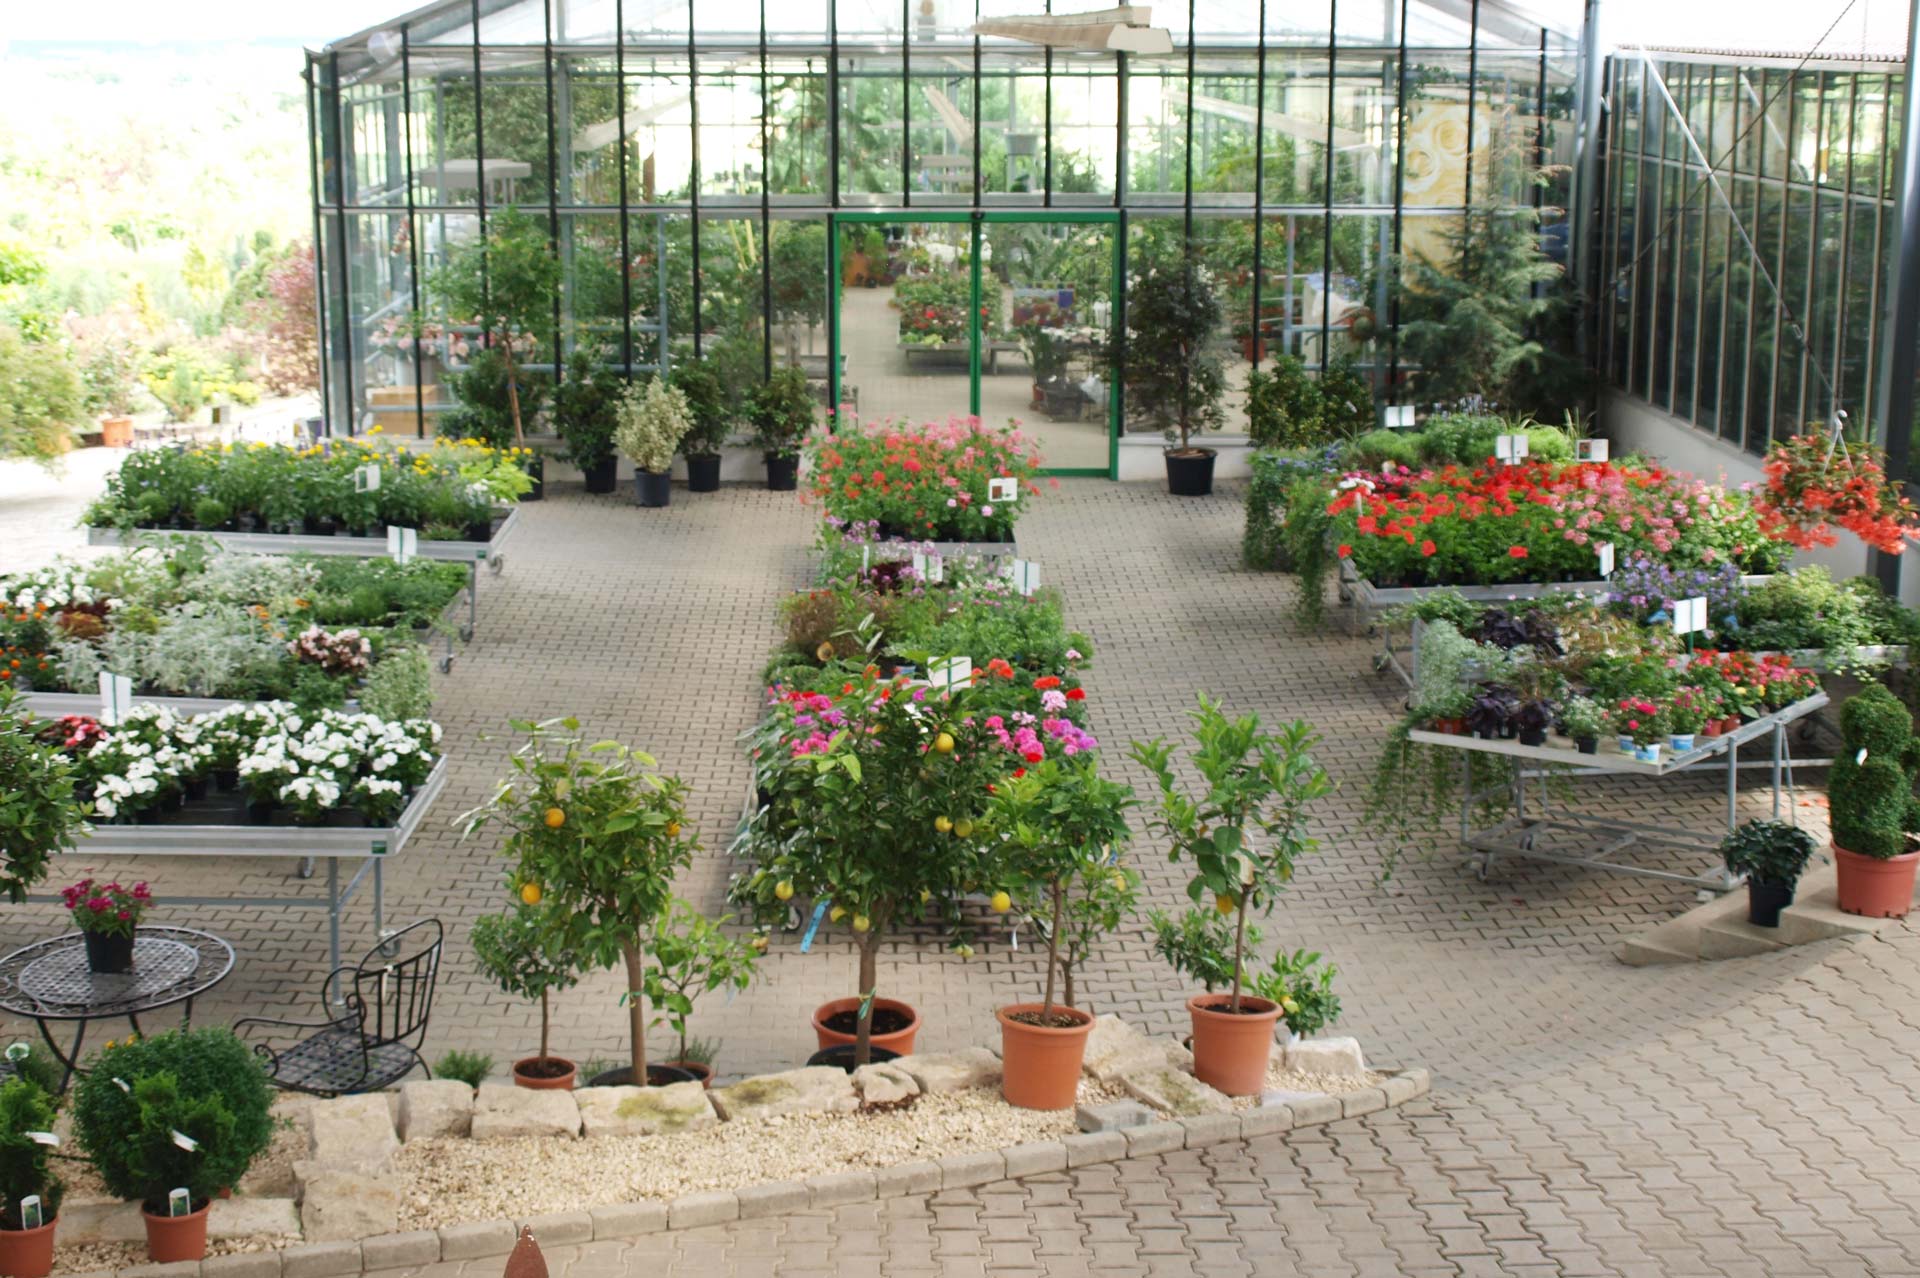 Scheerer Baumschulen & Gartencenter in Langenau/ Albeck, Baden Württemberg, Pflanzenmarkt, Produkvielfalt, Pflanzen, Bäume, Gartengestaltung